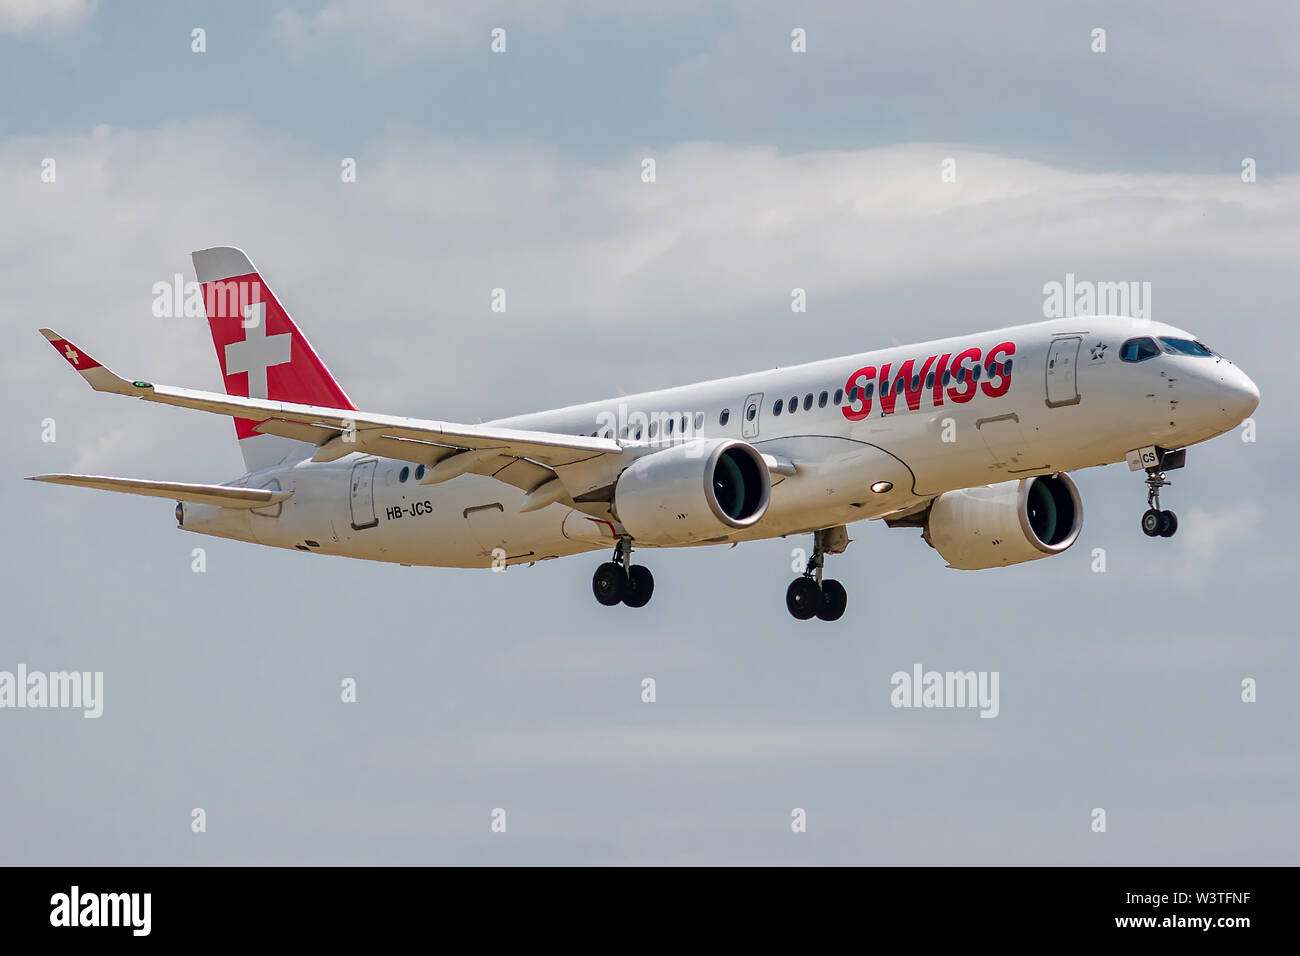 HB-JCS Airbus A220-300-55045 Le 11 juillet 2019, l'atterrissage sur les pistes de Paris Roissy à la fin du vol Swiss de Zurich LX638 Banque D'Images